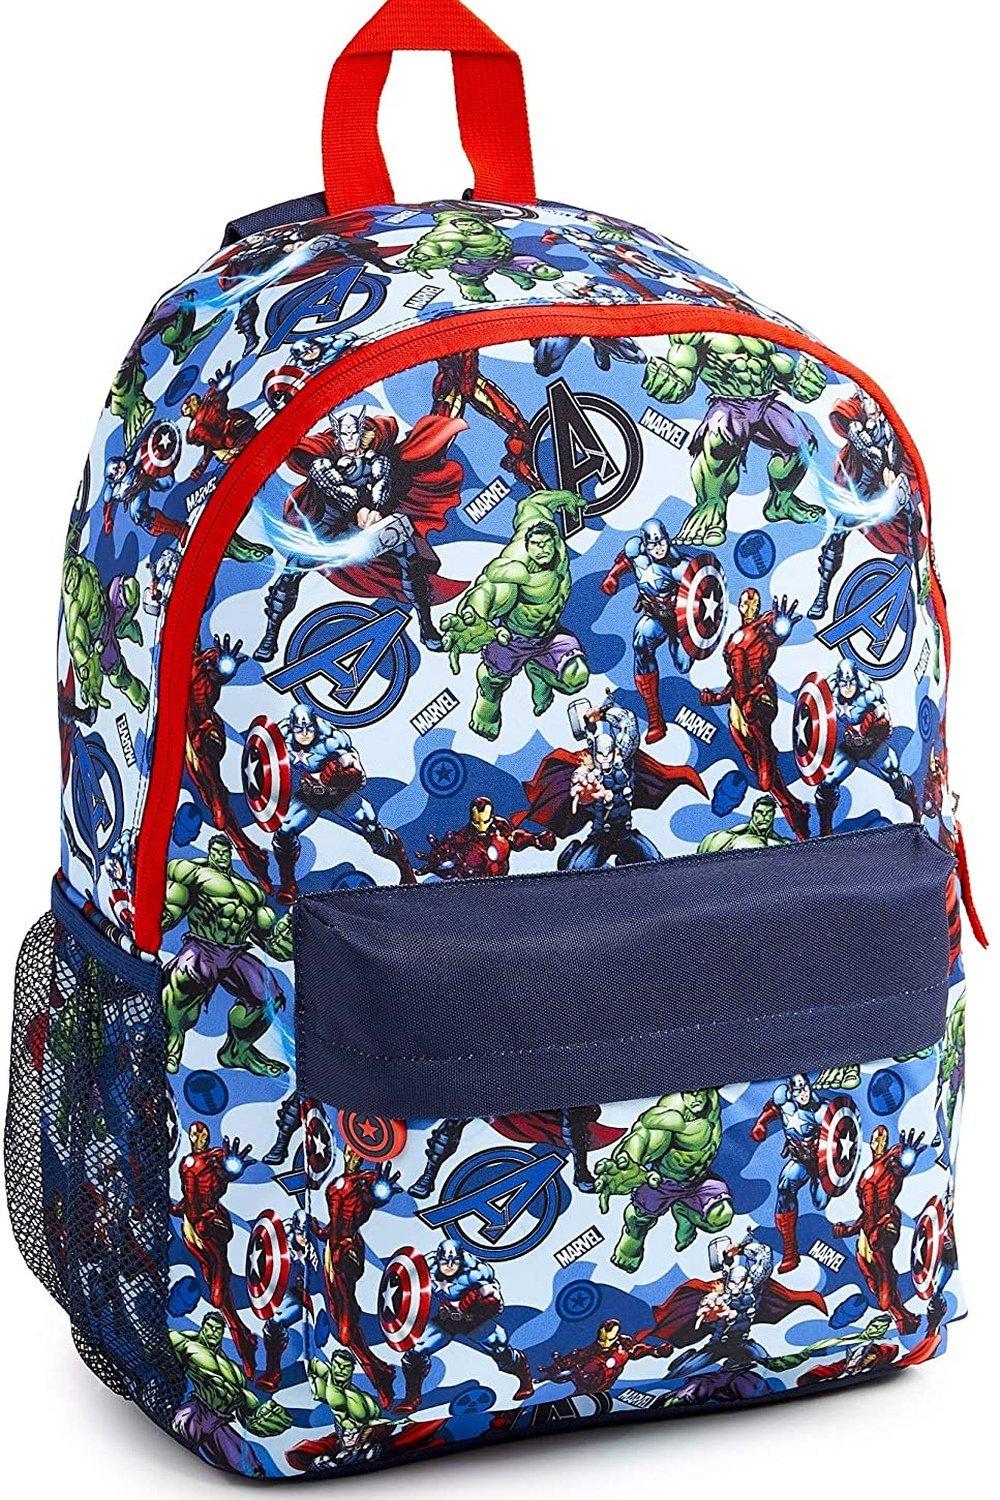 Большой рюкзак Avengers Superheros Marvel, синий светодиодная фигурка вау под тором marvel wow stuff